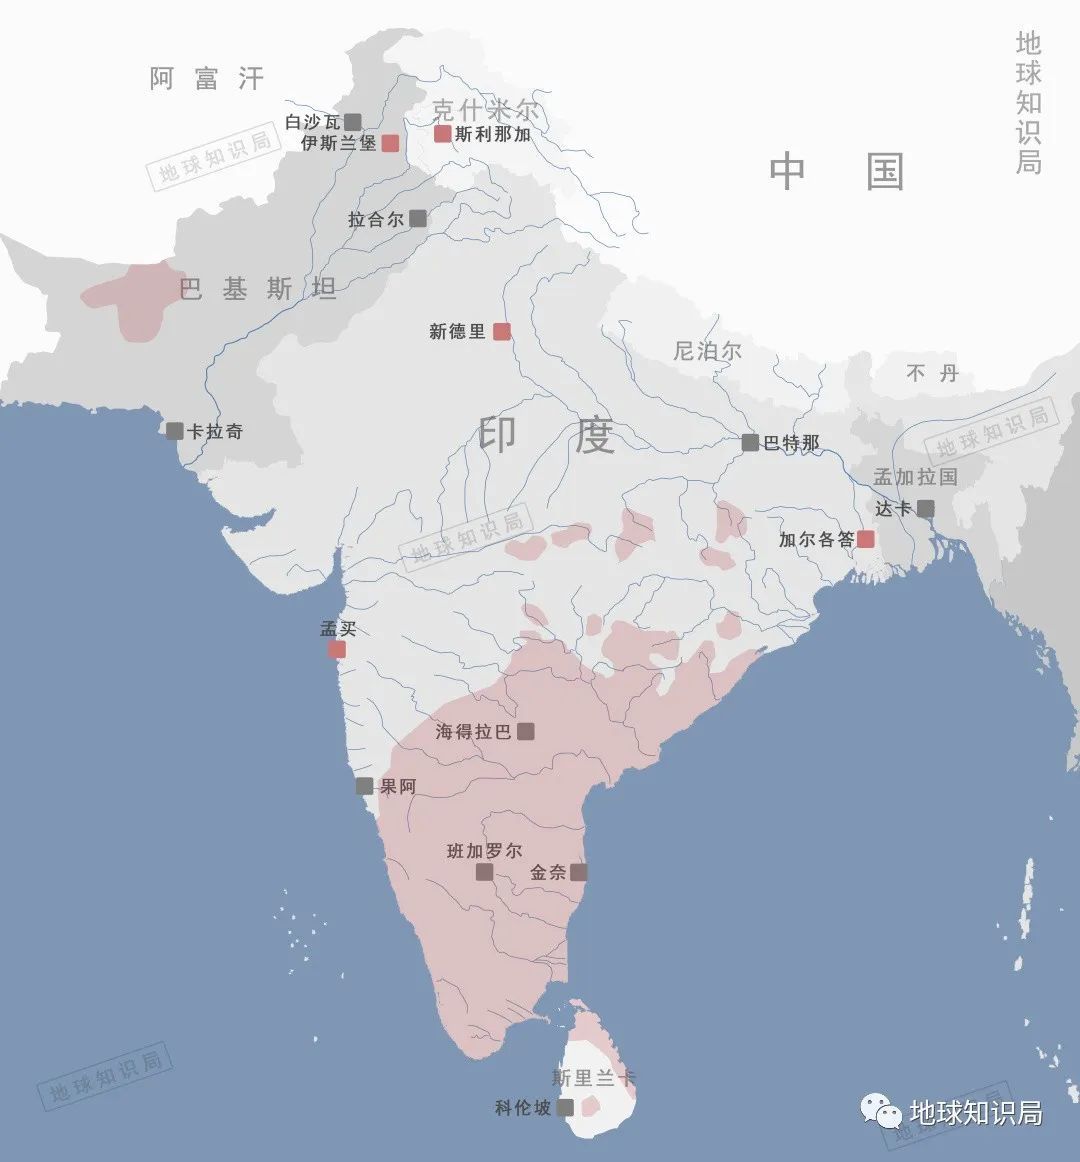 达罗毗荼人广泛分布在南亚,主要居住在印度▼开头说过的达罗毗荼人,就